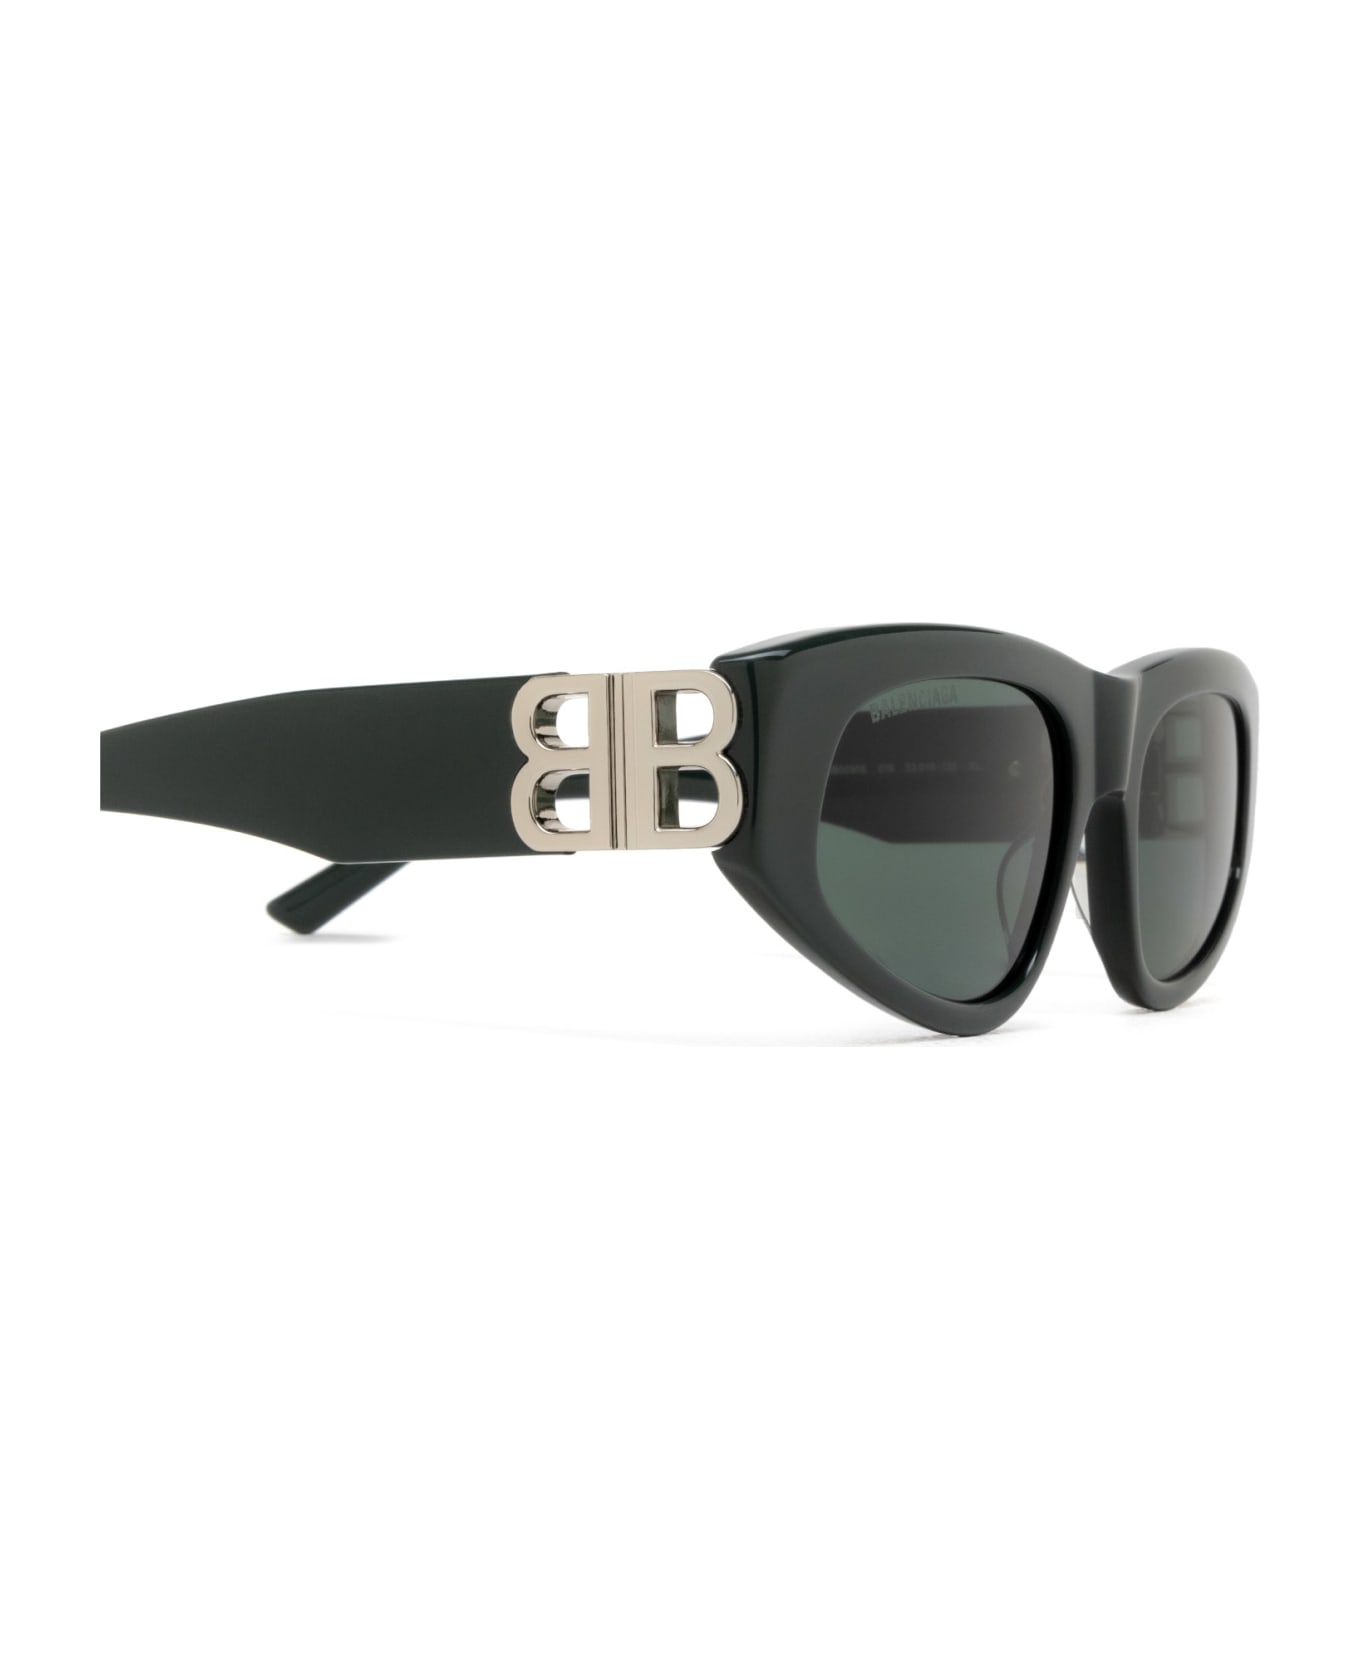 Balenciaga Eyewear Bb0095s Sunglasses - Green